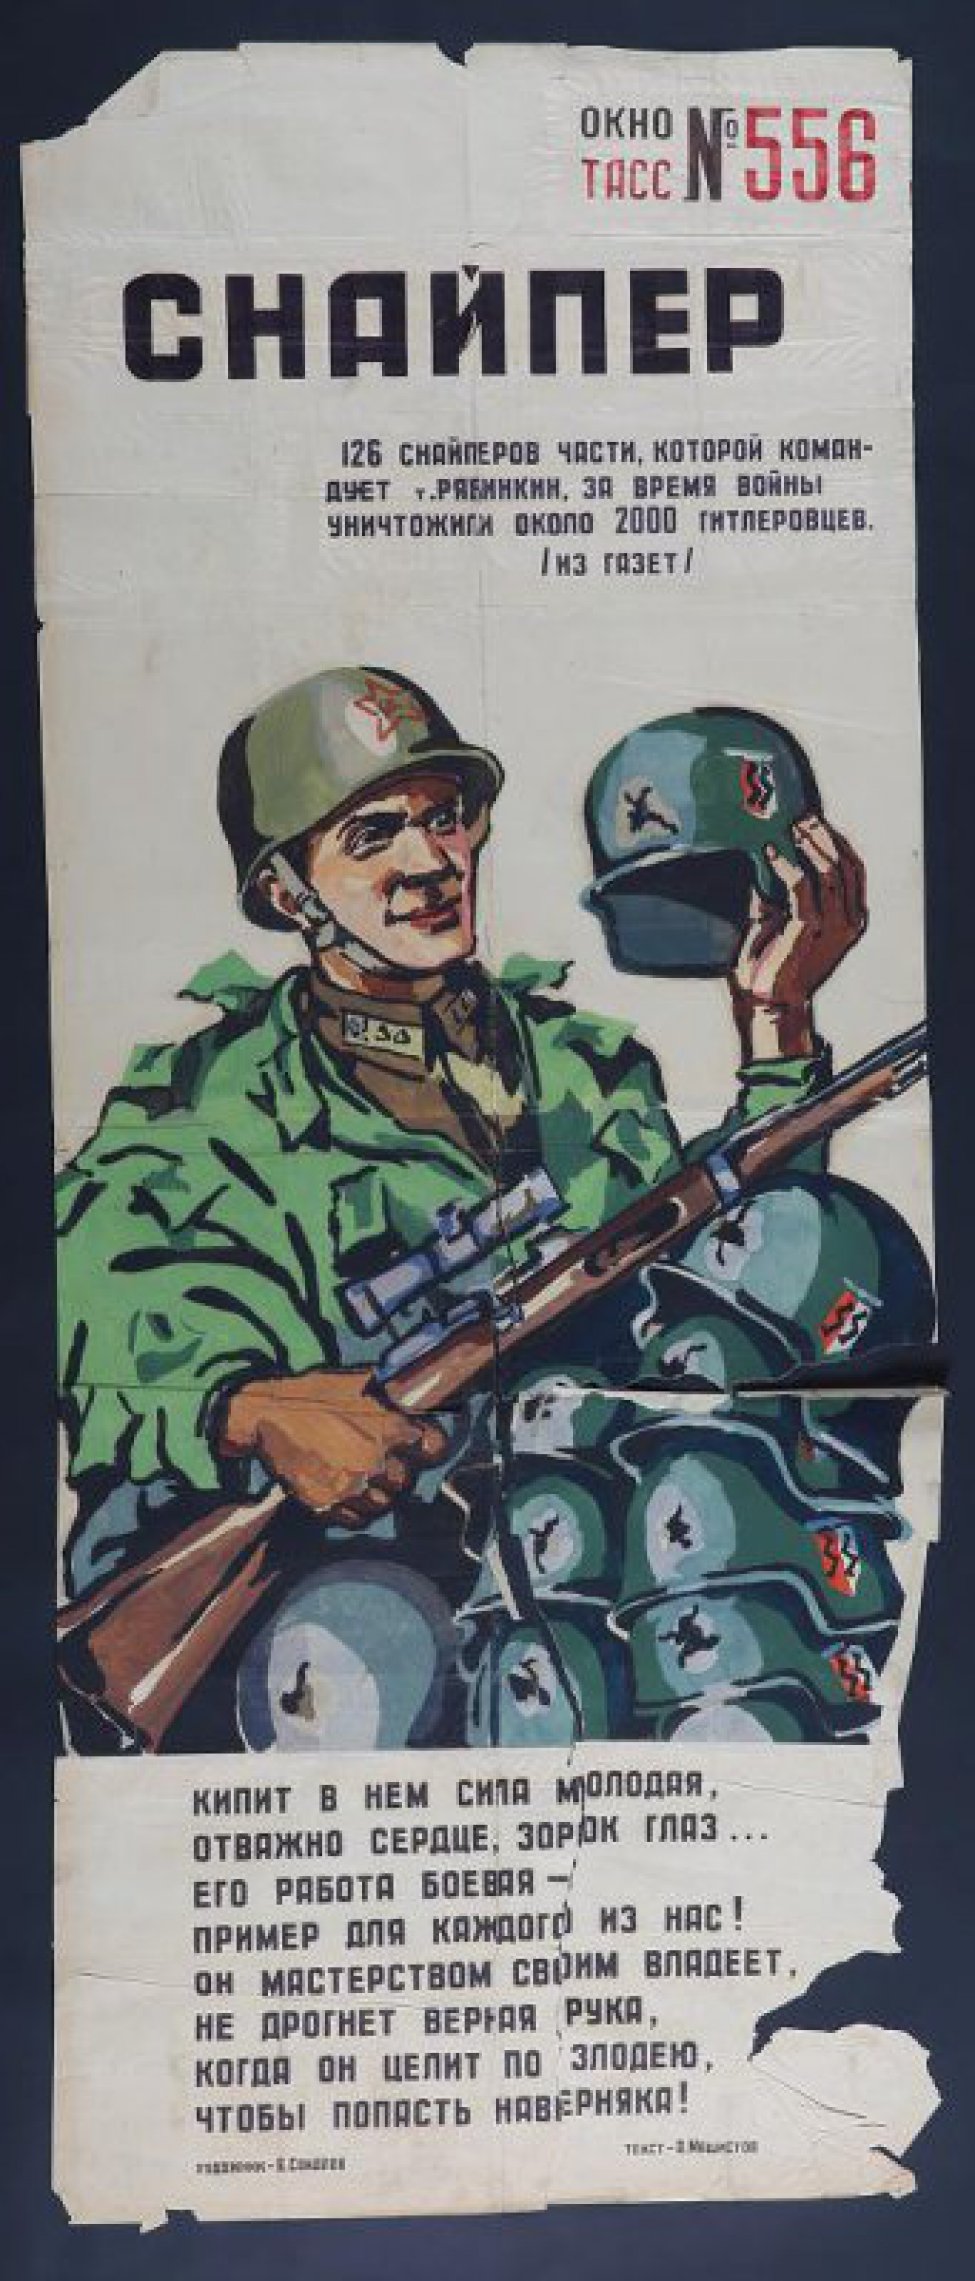 Изображен советский воин с винтовкой в руках и фашистской каской, текст:"А.Машистова". Кипит в нем сила молодая,отважно сердце,зорок глаз..."